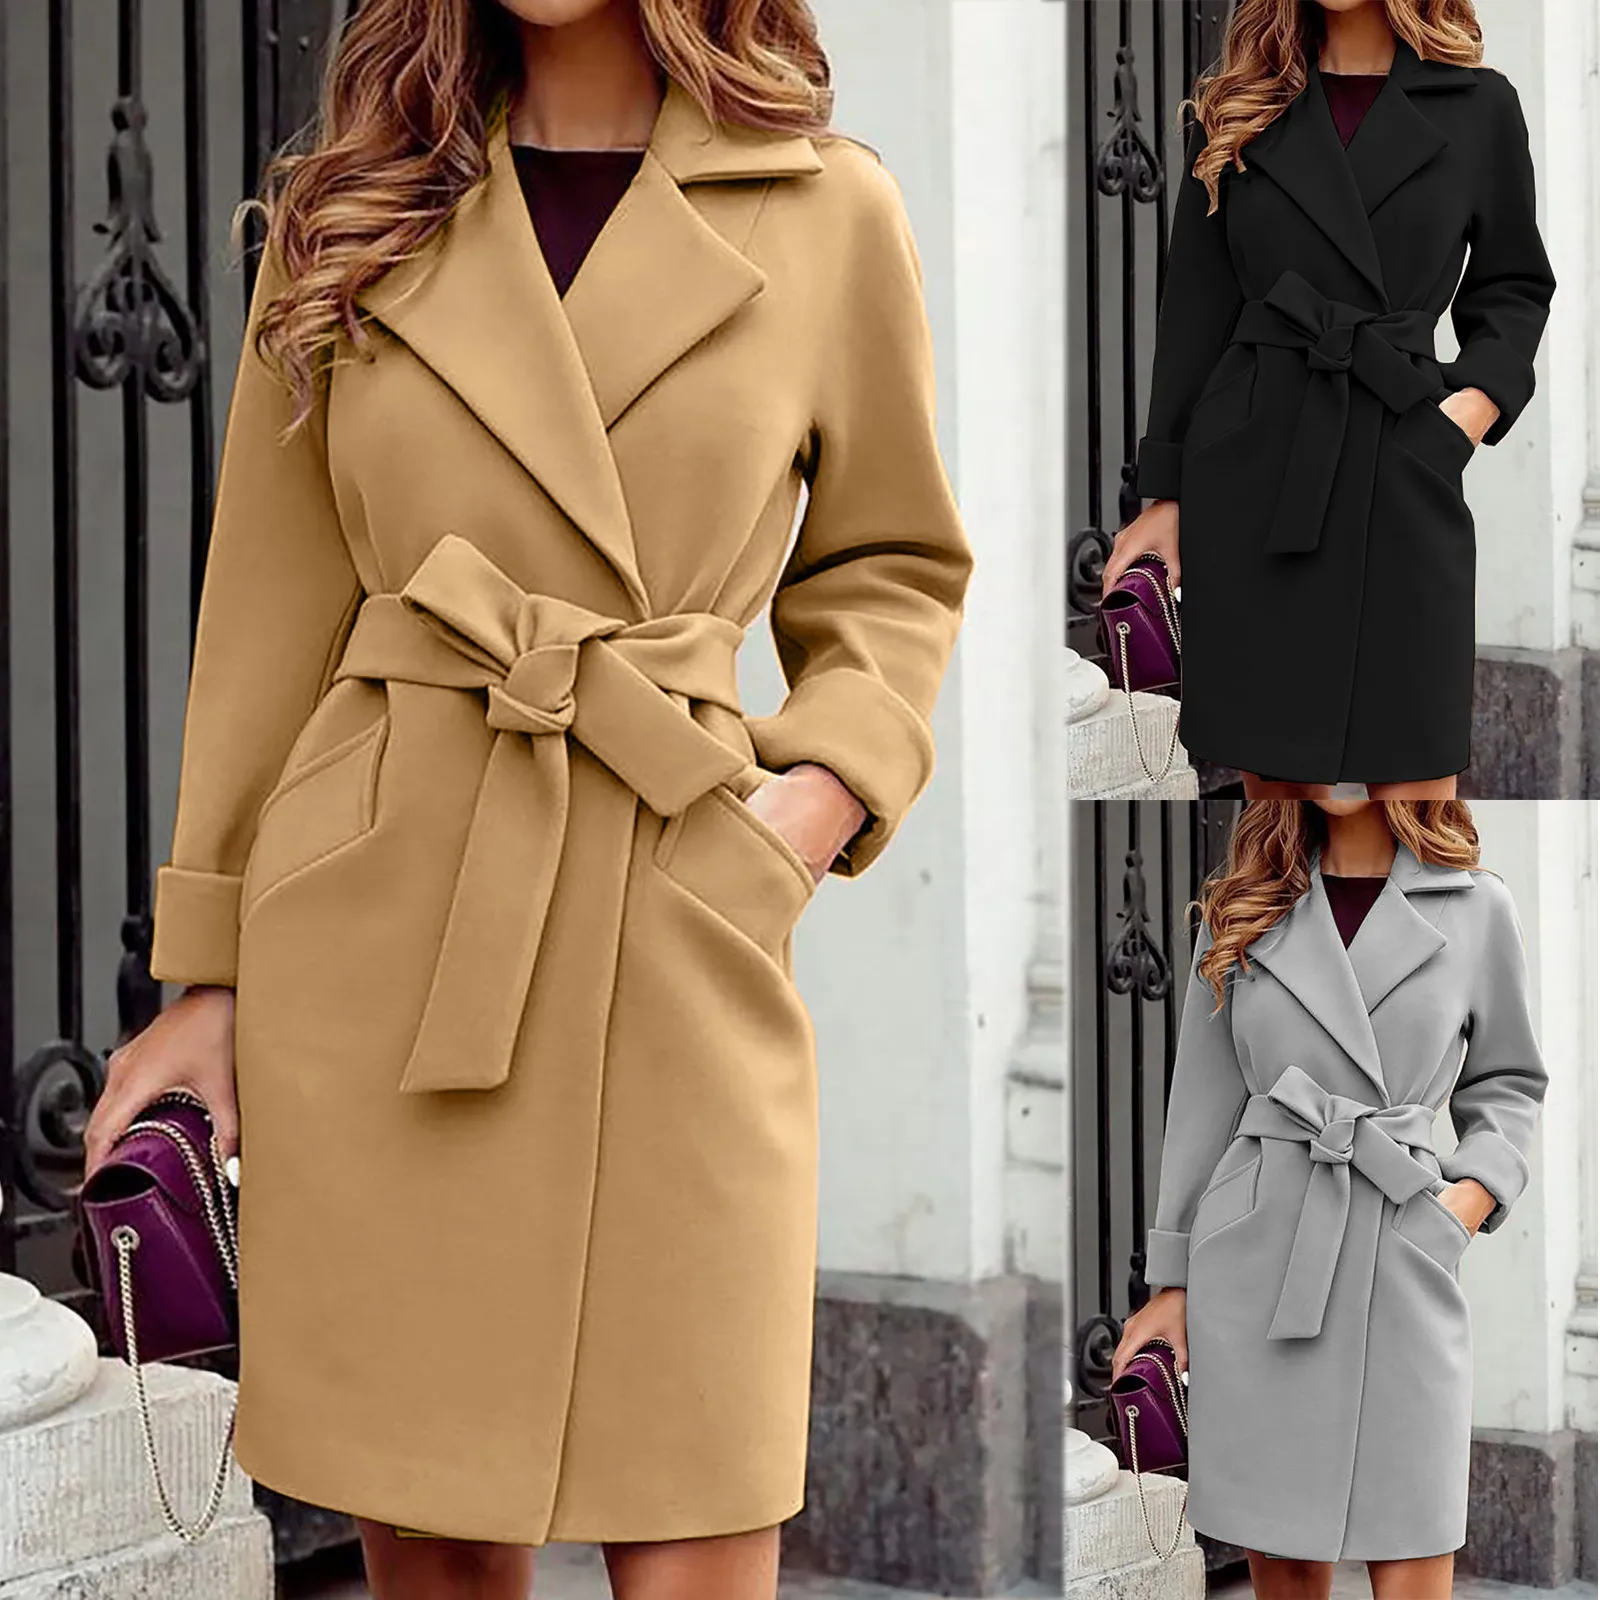 

Women's Coat Autumn Winter Lapel Woolen Cloth Trench Jacket Long Overcoat Outwear Trendy Dress Veste Femme Manteau Femme 2021